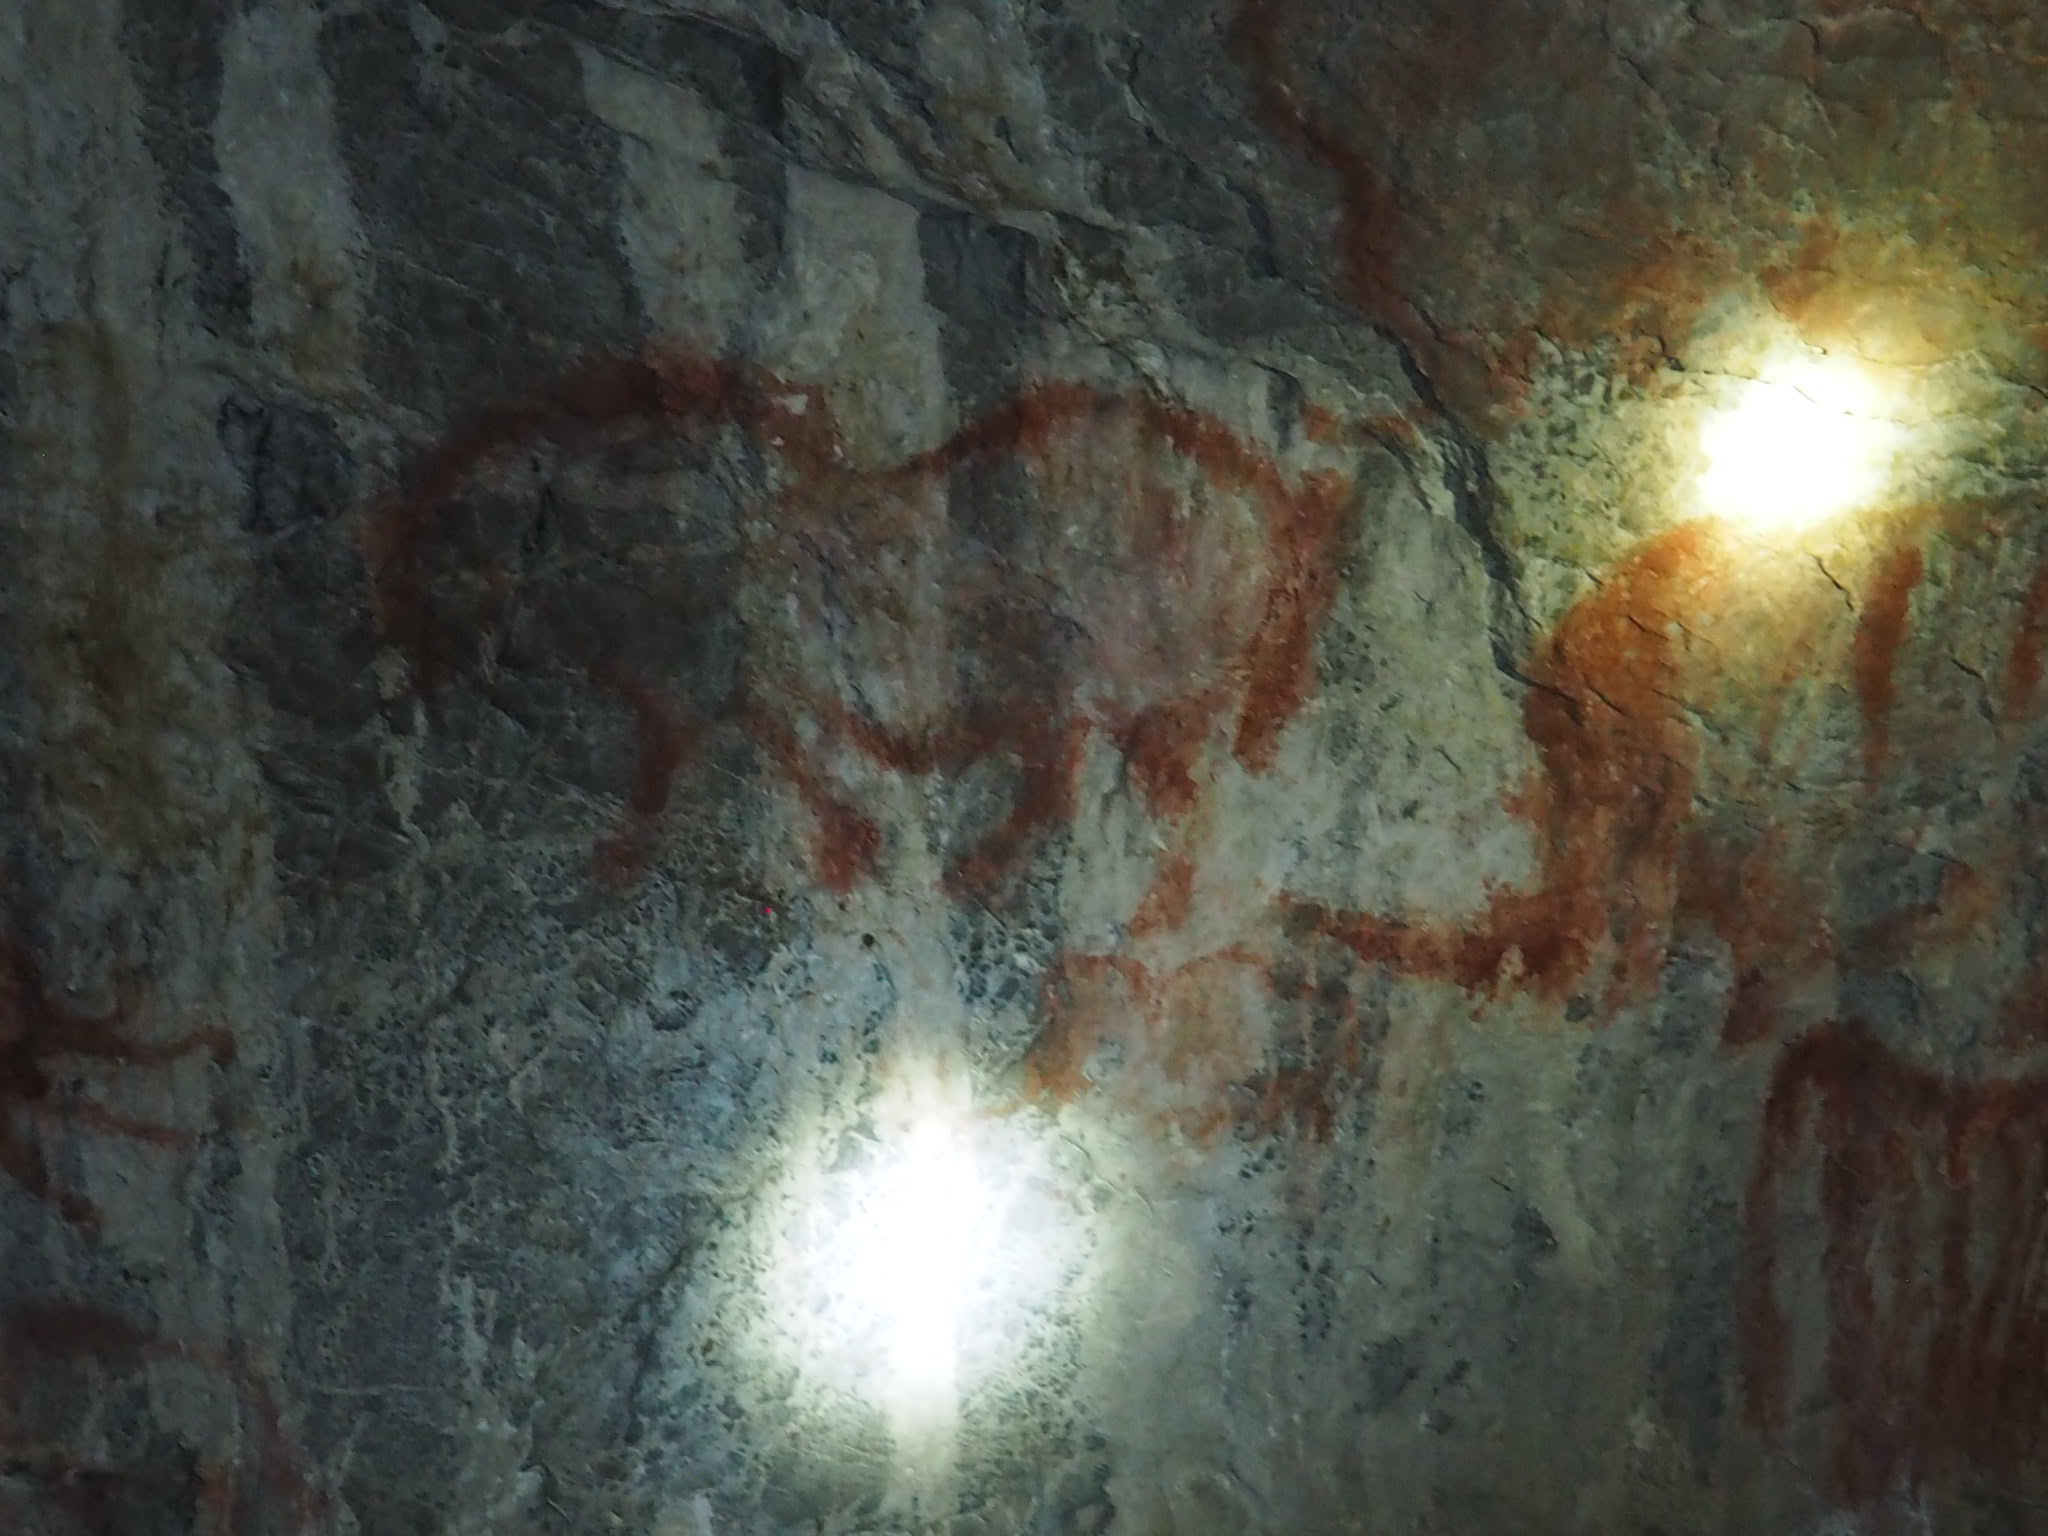 Копии рисунков древнего человека, нанесенные недалеко от входа в пещеру в качестве аттракциона для туристов